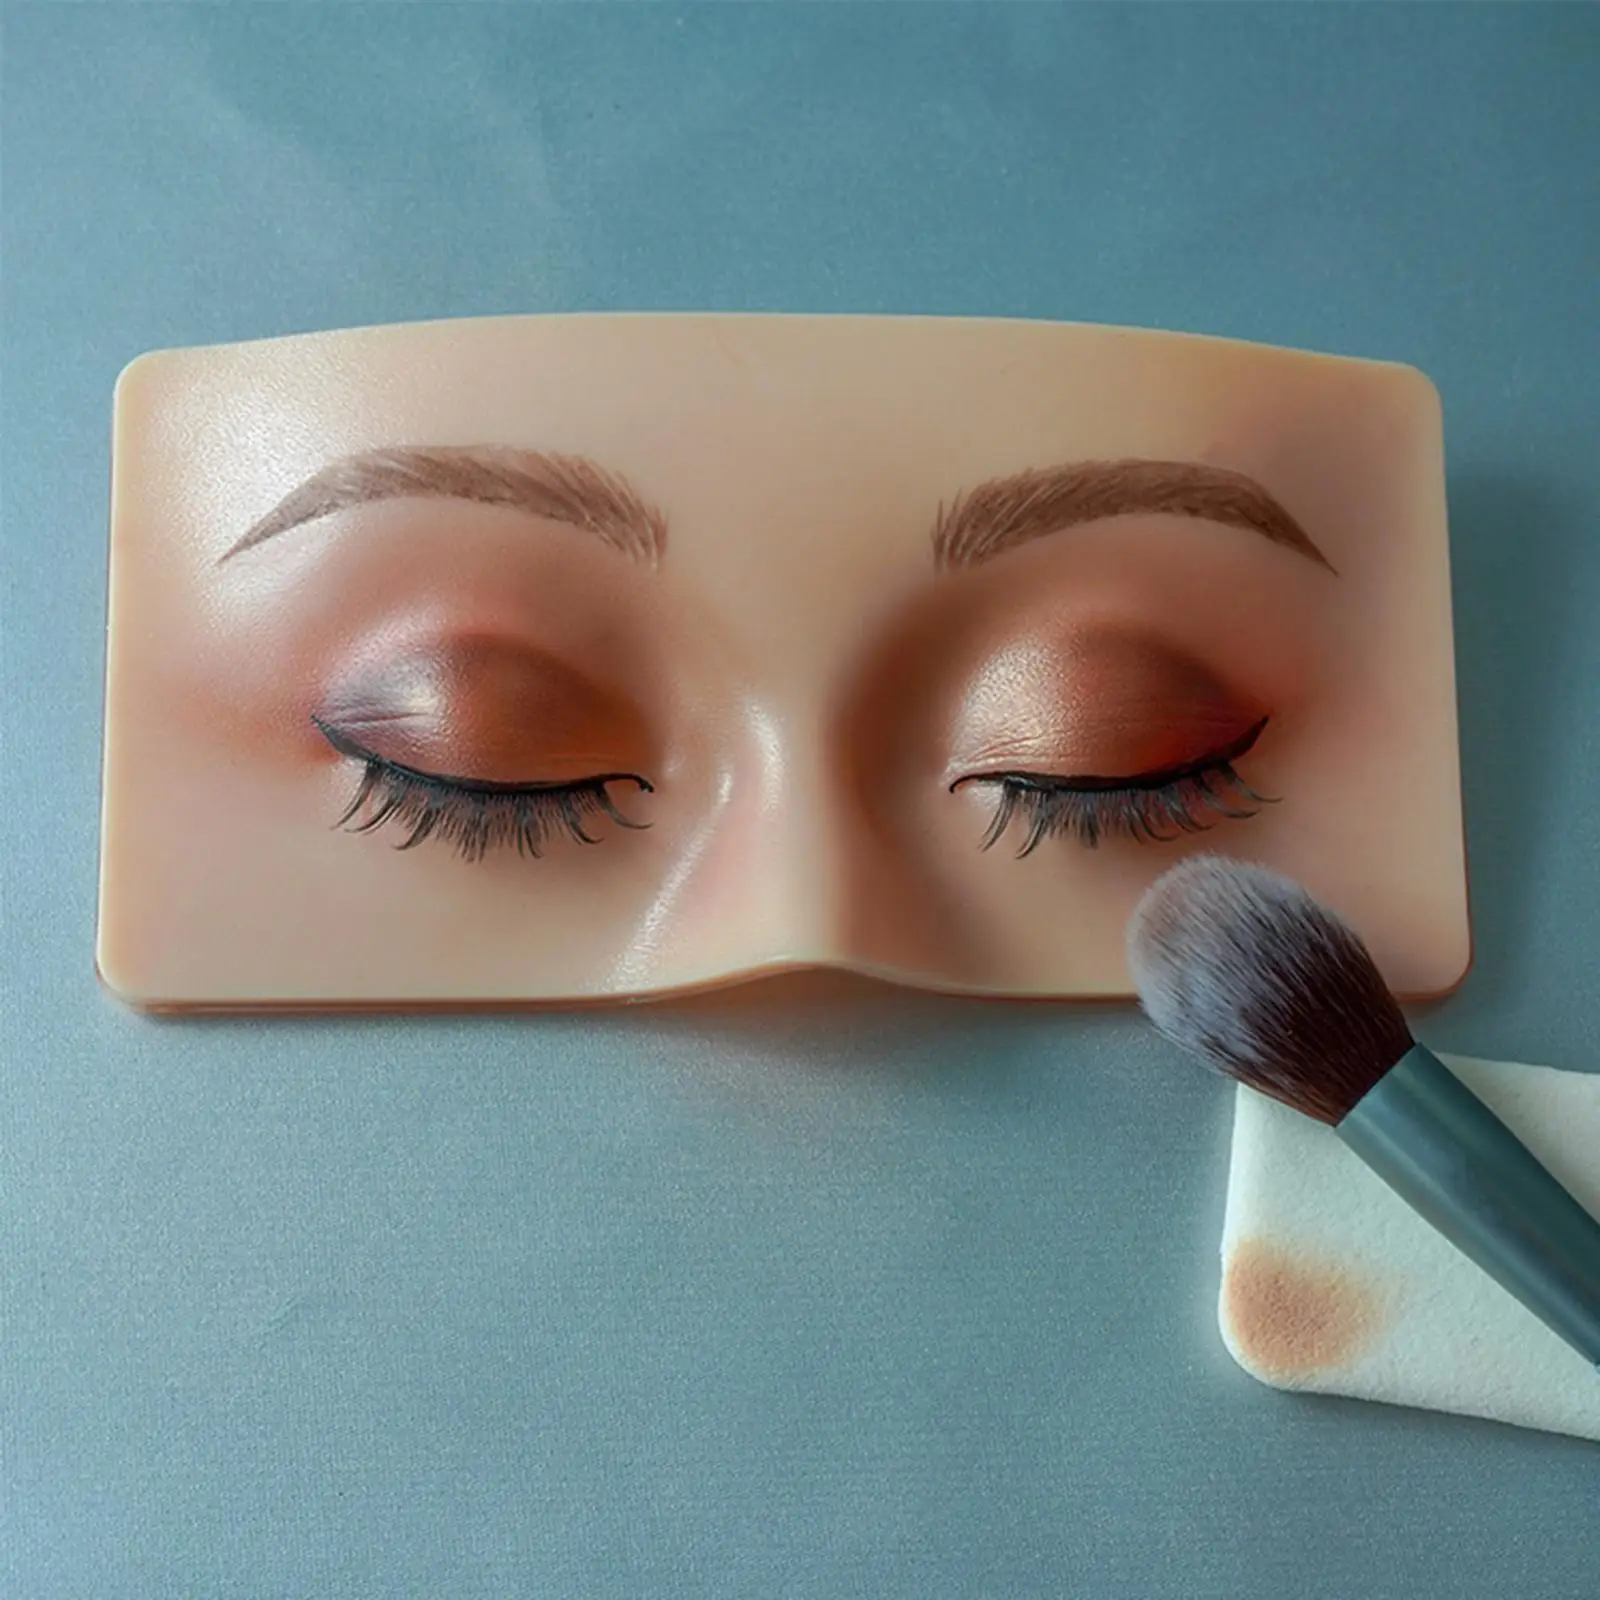 Makeup Practice board, 3D Realistic Pad, Makeup Makeup Practice Eyebrow Lash Training, face up